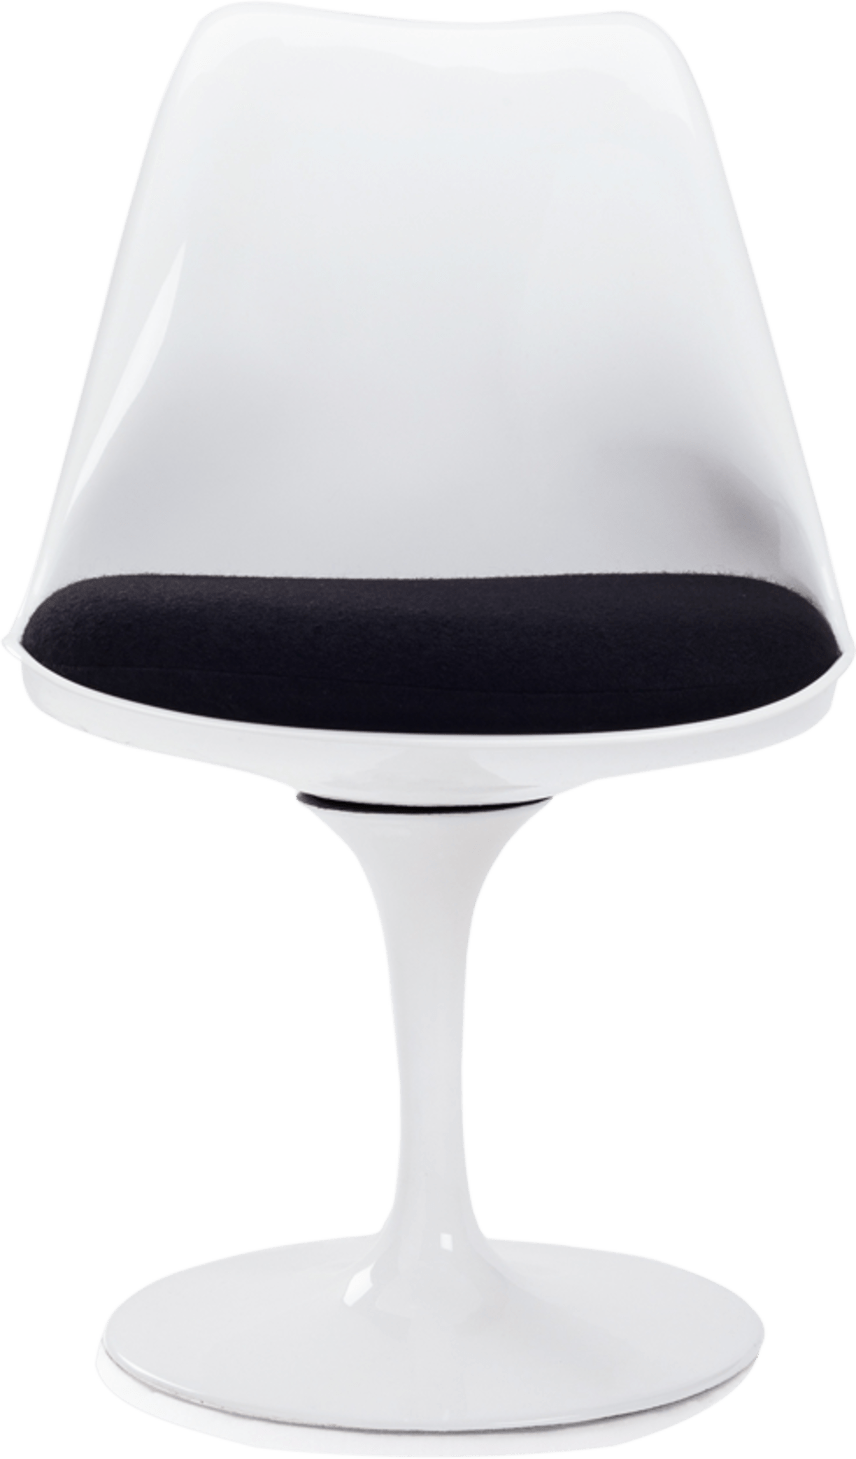 Silla Tulip - Fibra de vidrio Black/White image.